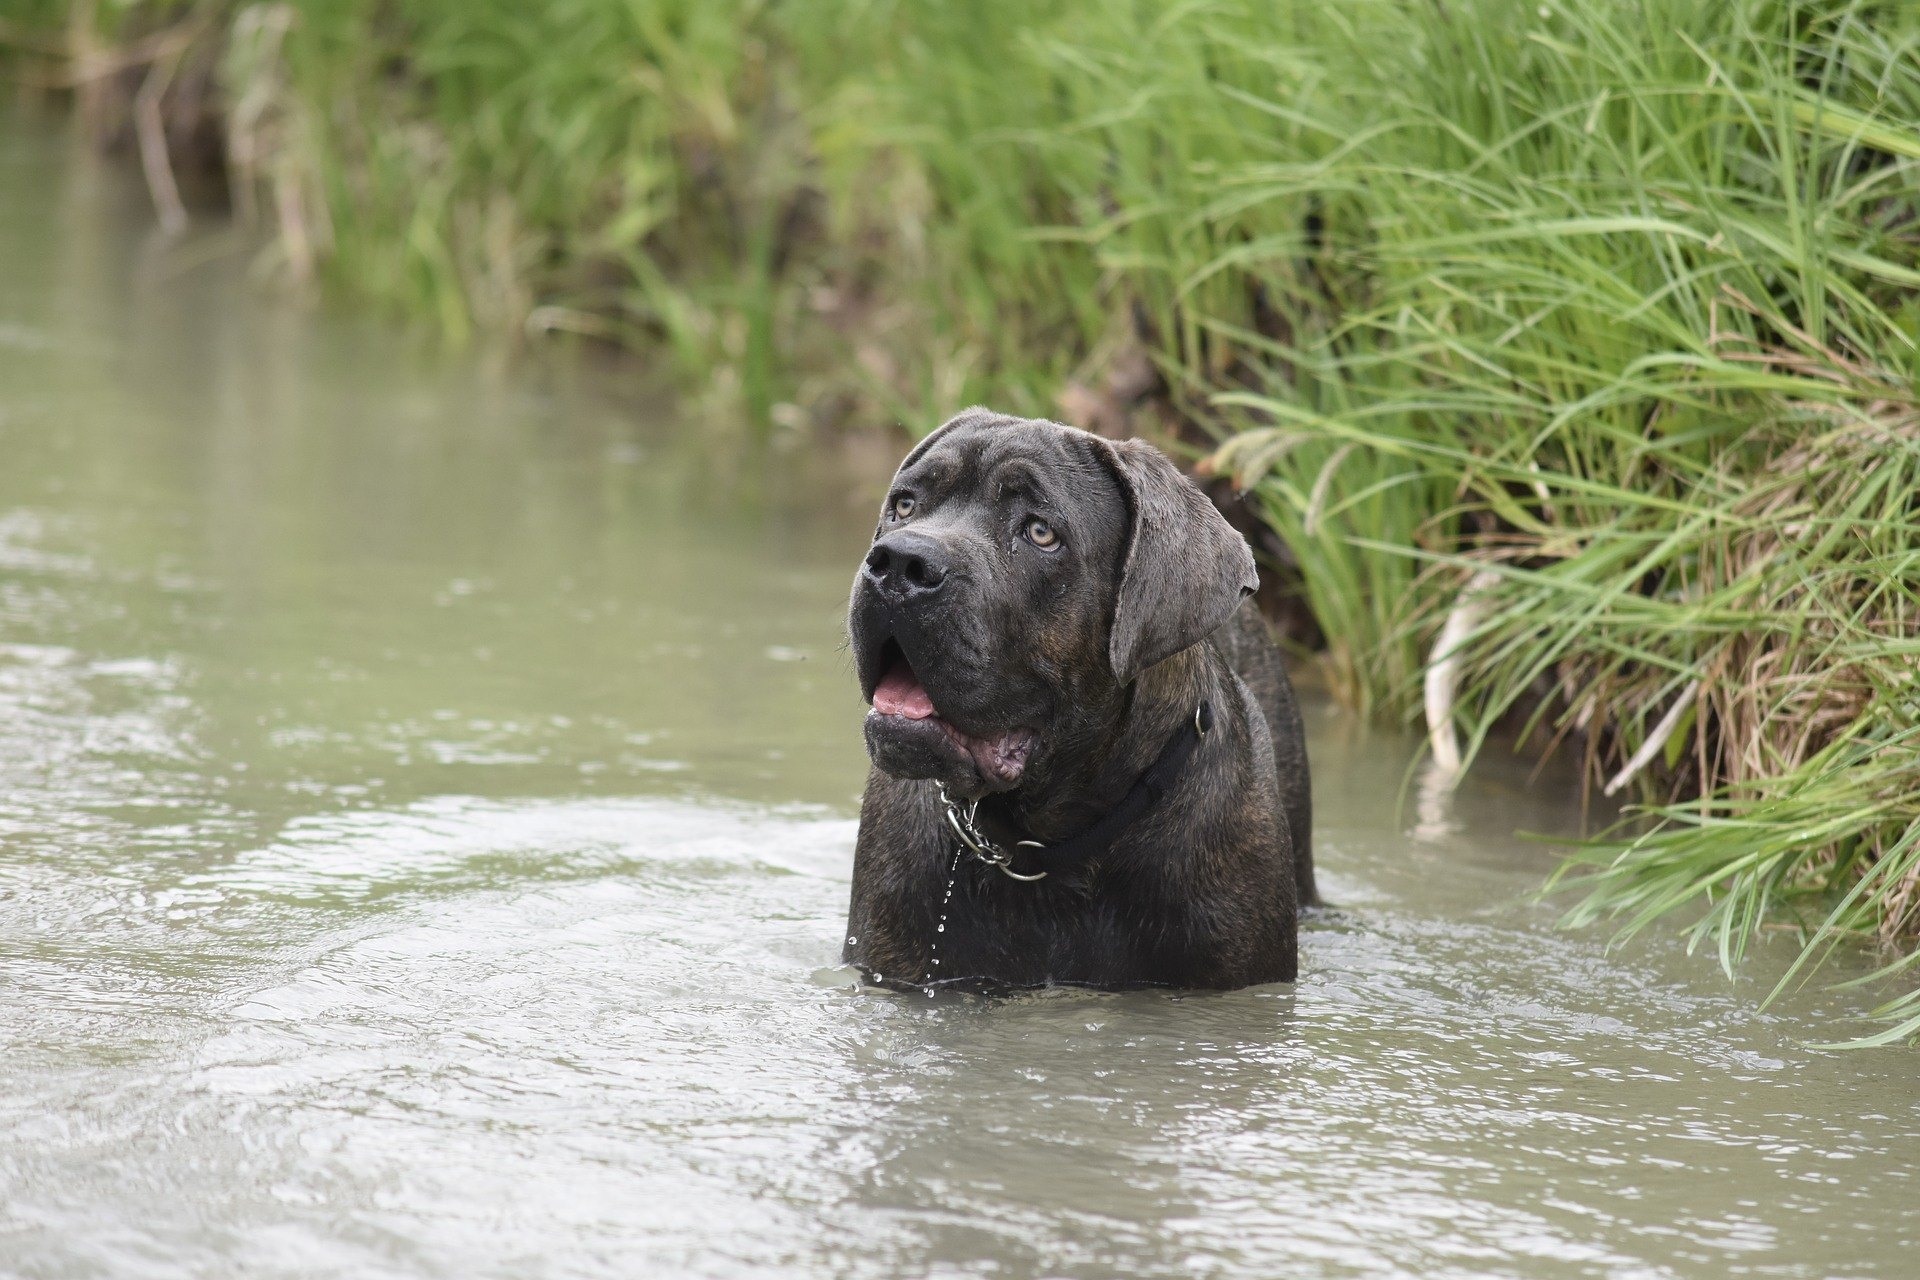 Cane corso je hlídací, ochranný, sledovací a policejní pes.